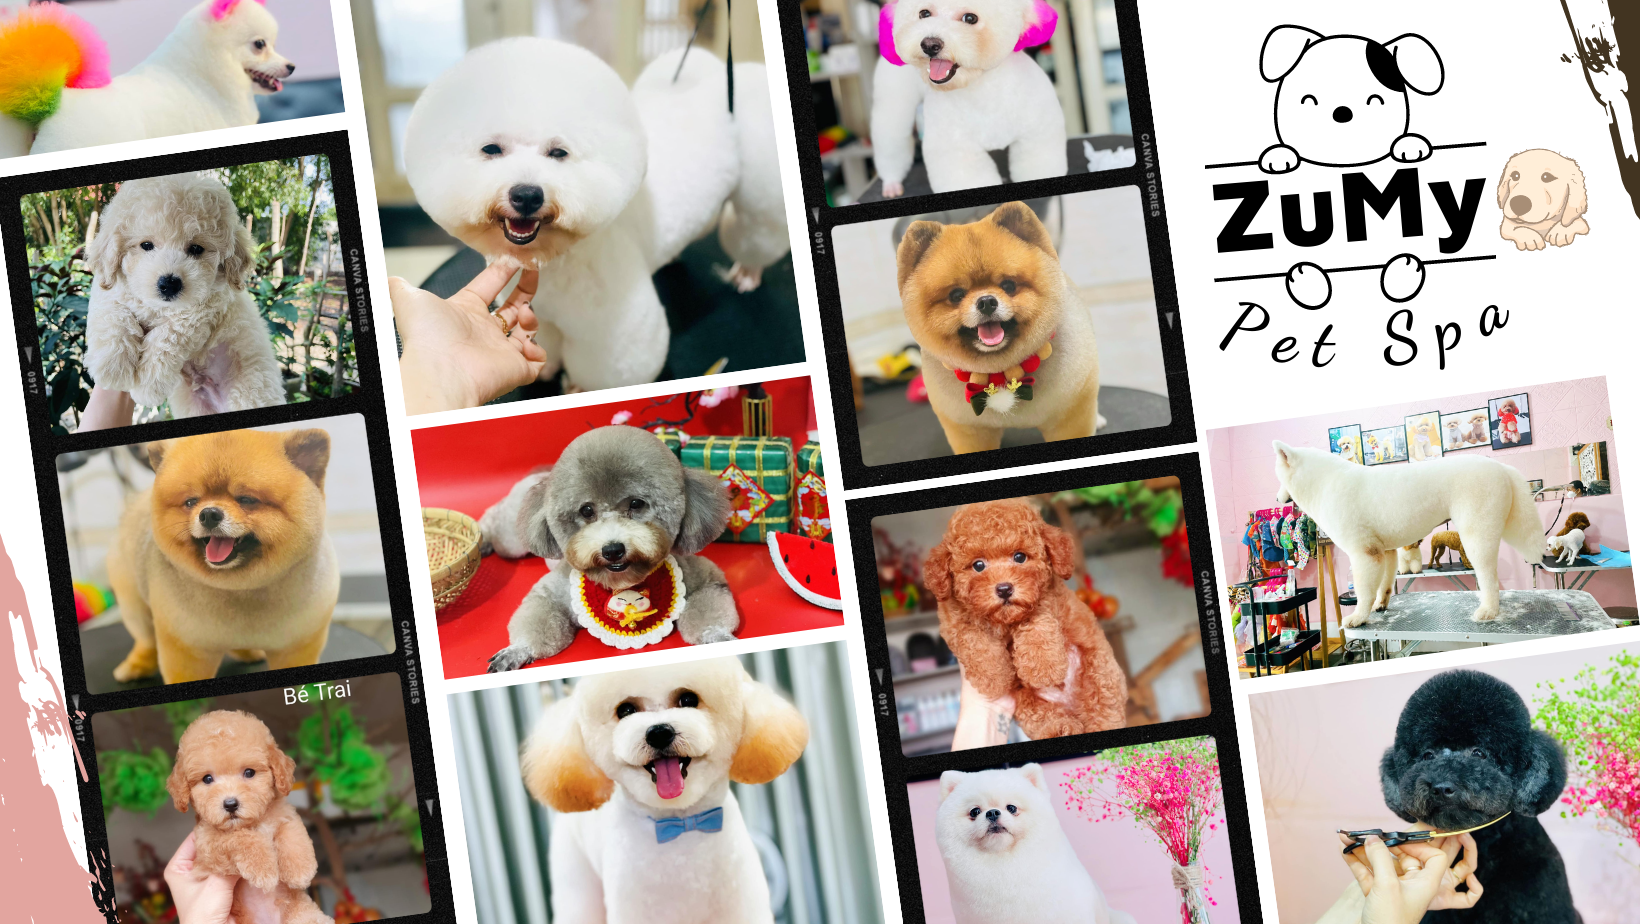 Zumy Pet Spa Dịch Vụ Làm Đẹp Thú Cưng Chuyên Nghiệp, Uy Tín Tại Hóc Môn